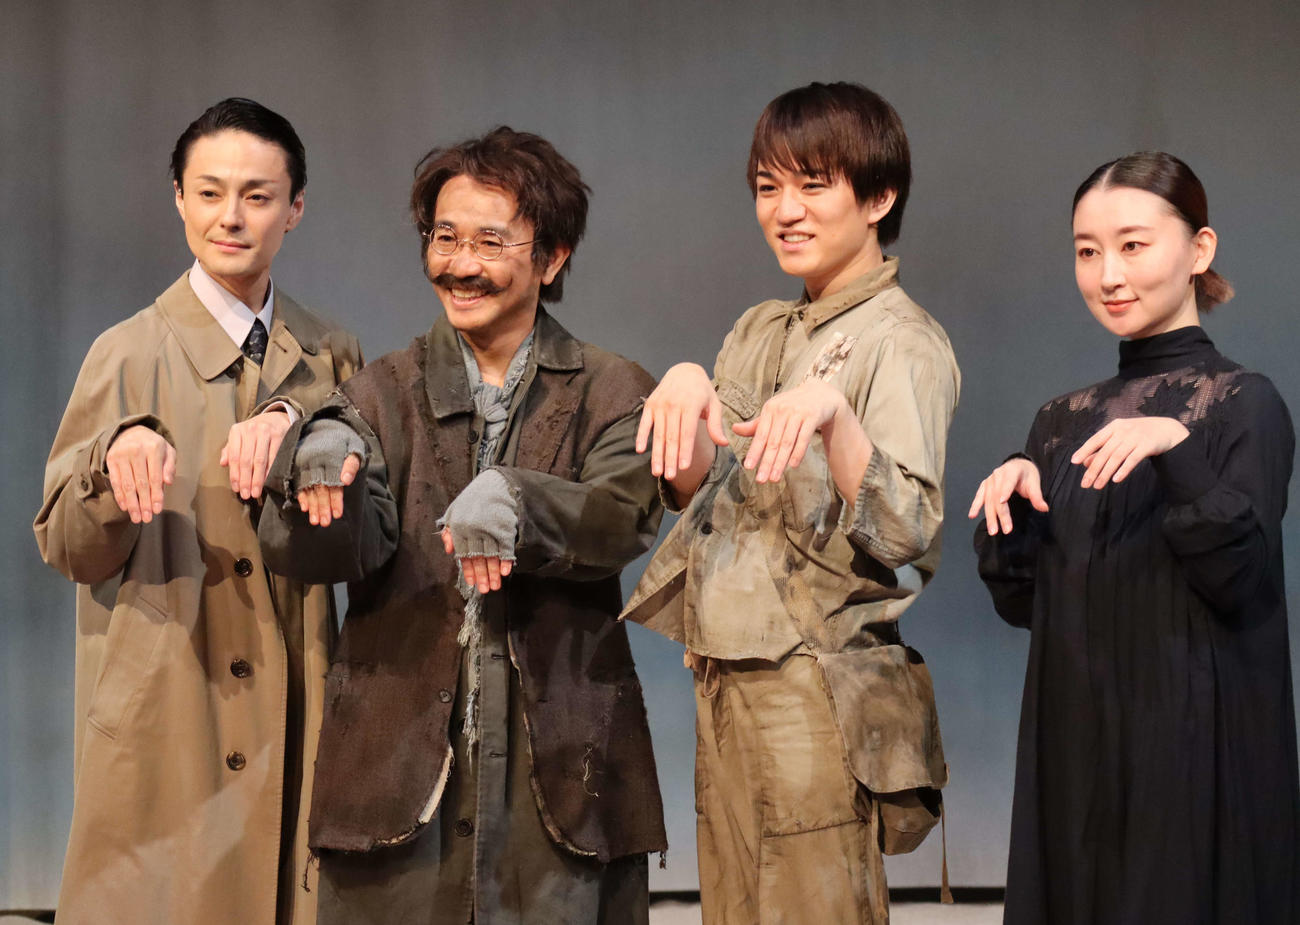 舞台「幽霊はここにいる」の取材会に出席した、左から木村了、八嶋智人、神山智洋、演出の稲葉賀恵氏